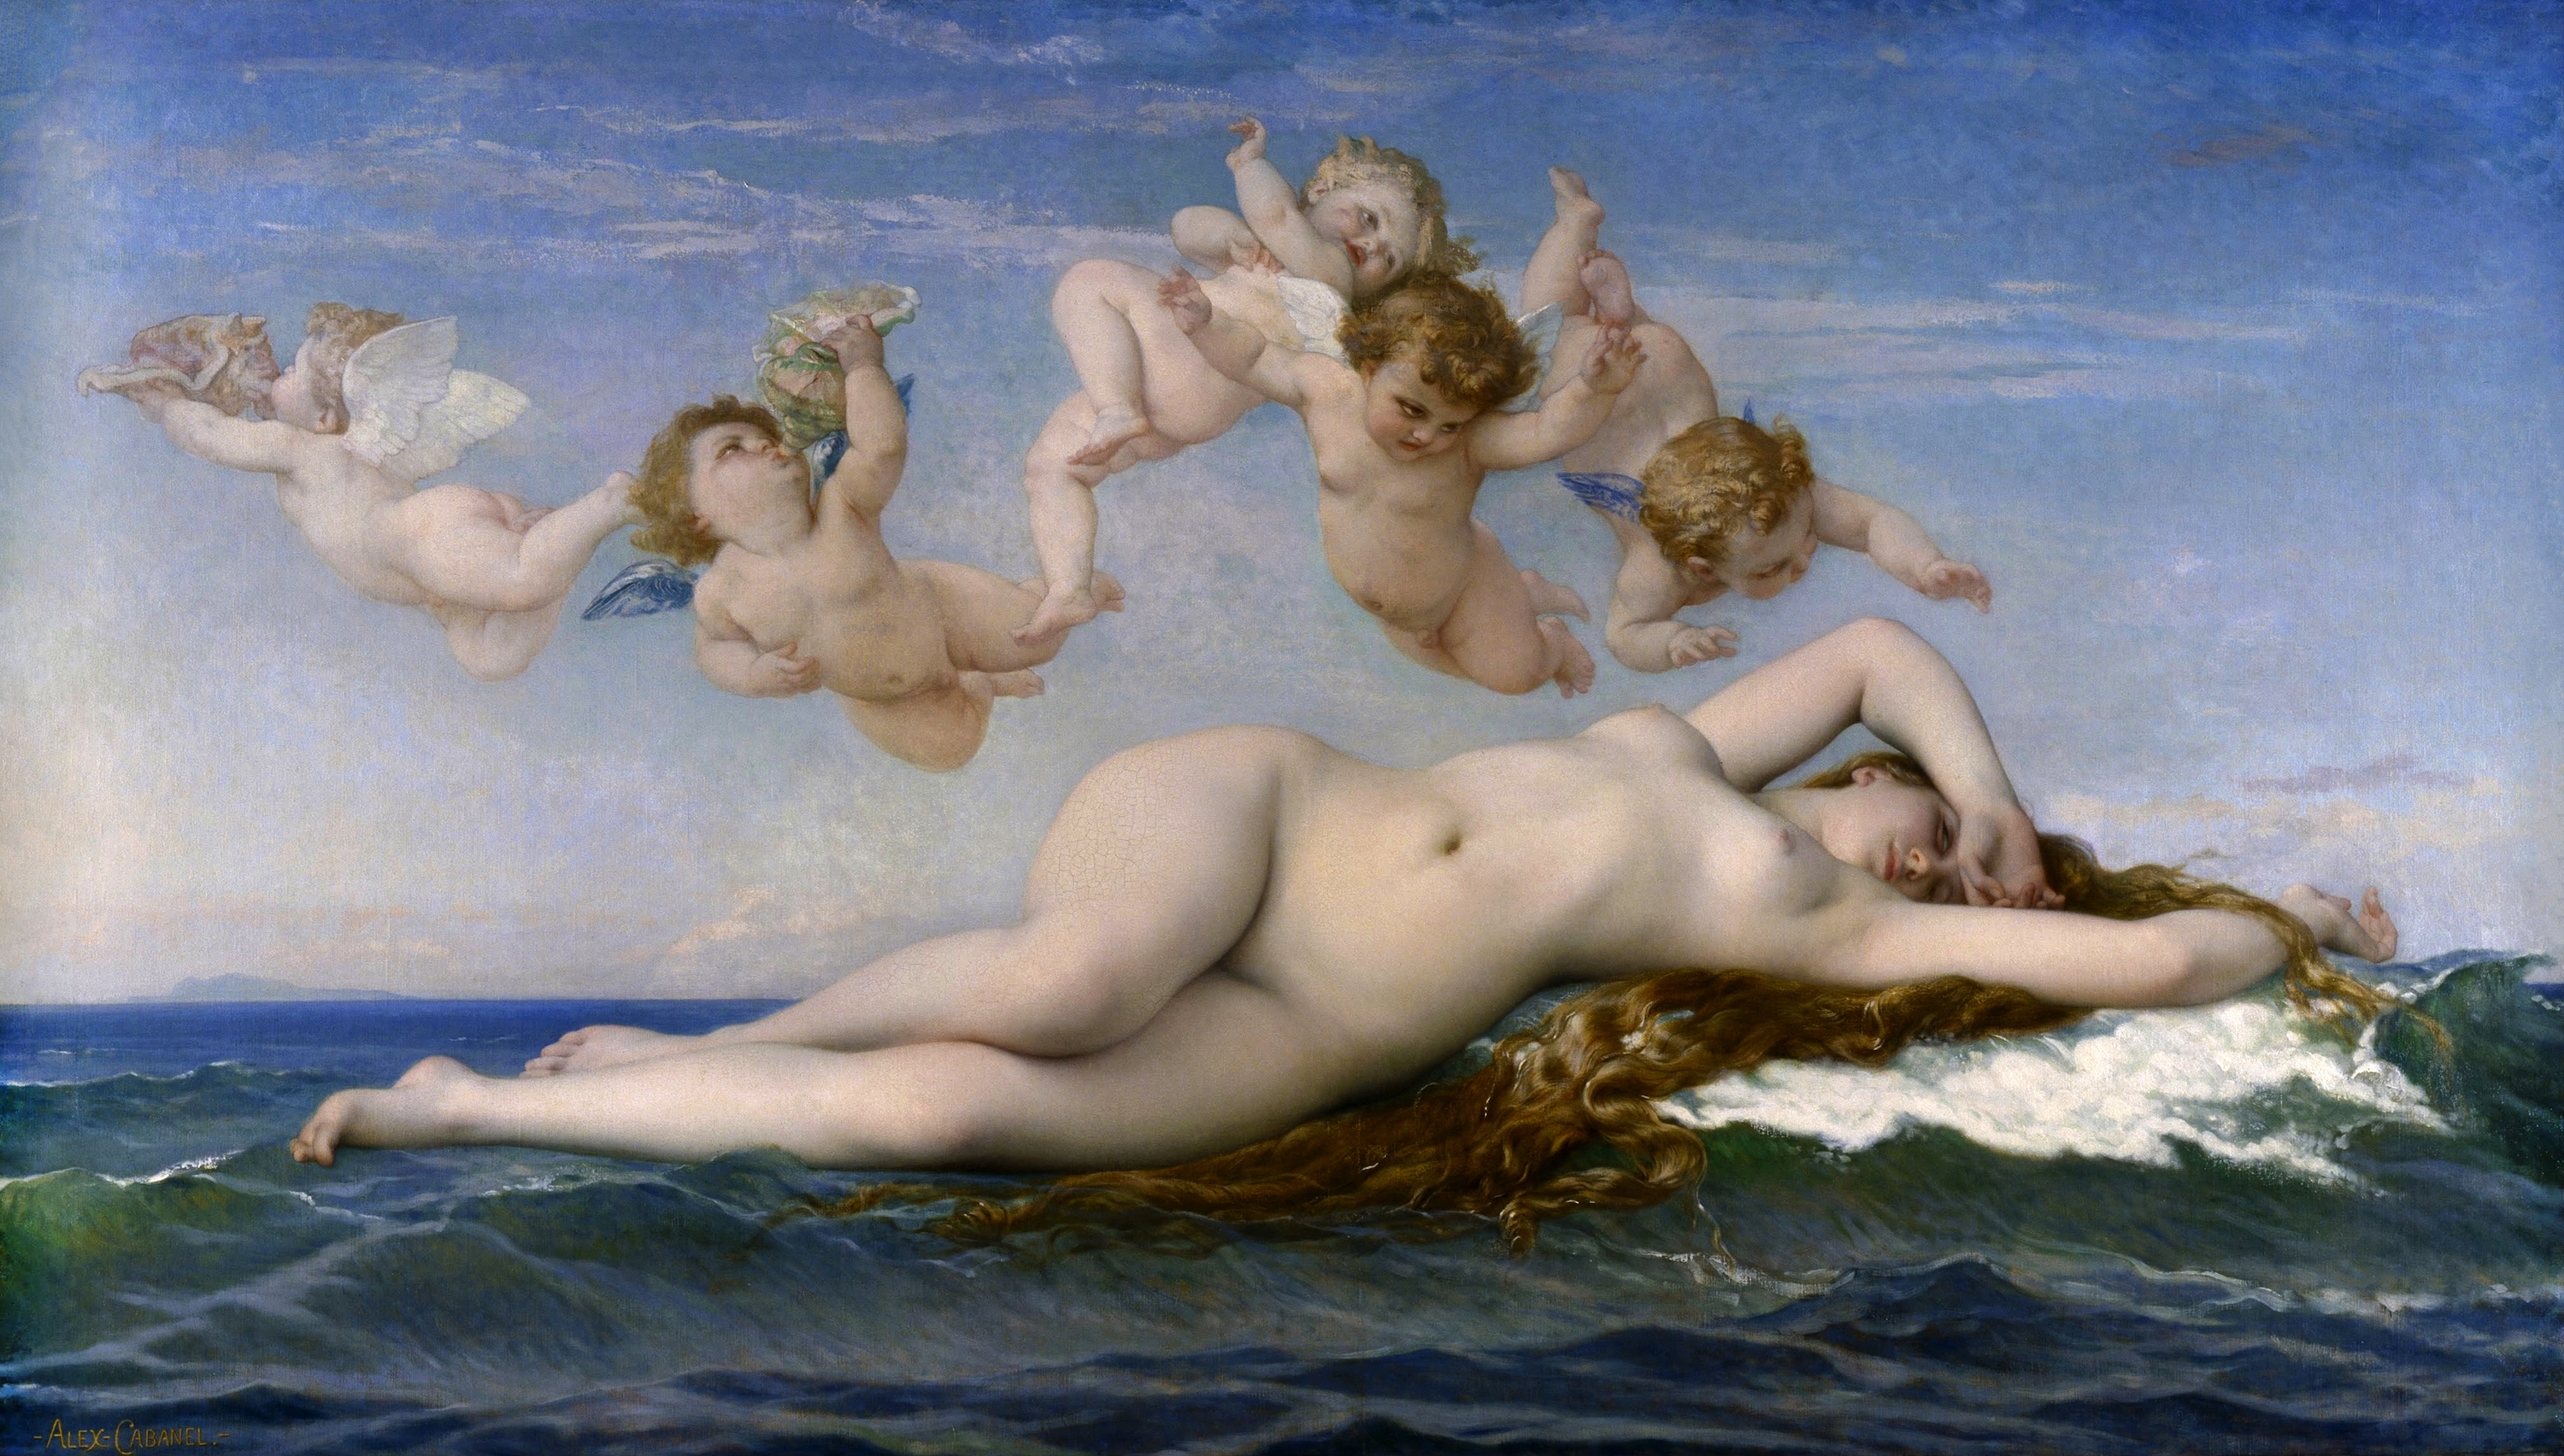 El nacimiento de Venus by Alexandre Cabanel - 1863 - 130 x 225 cm Musée d'Orsay